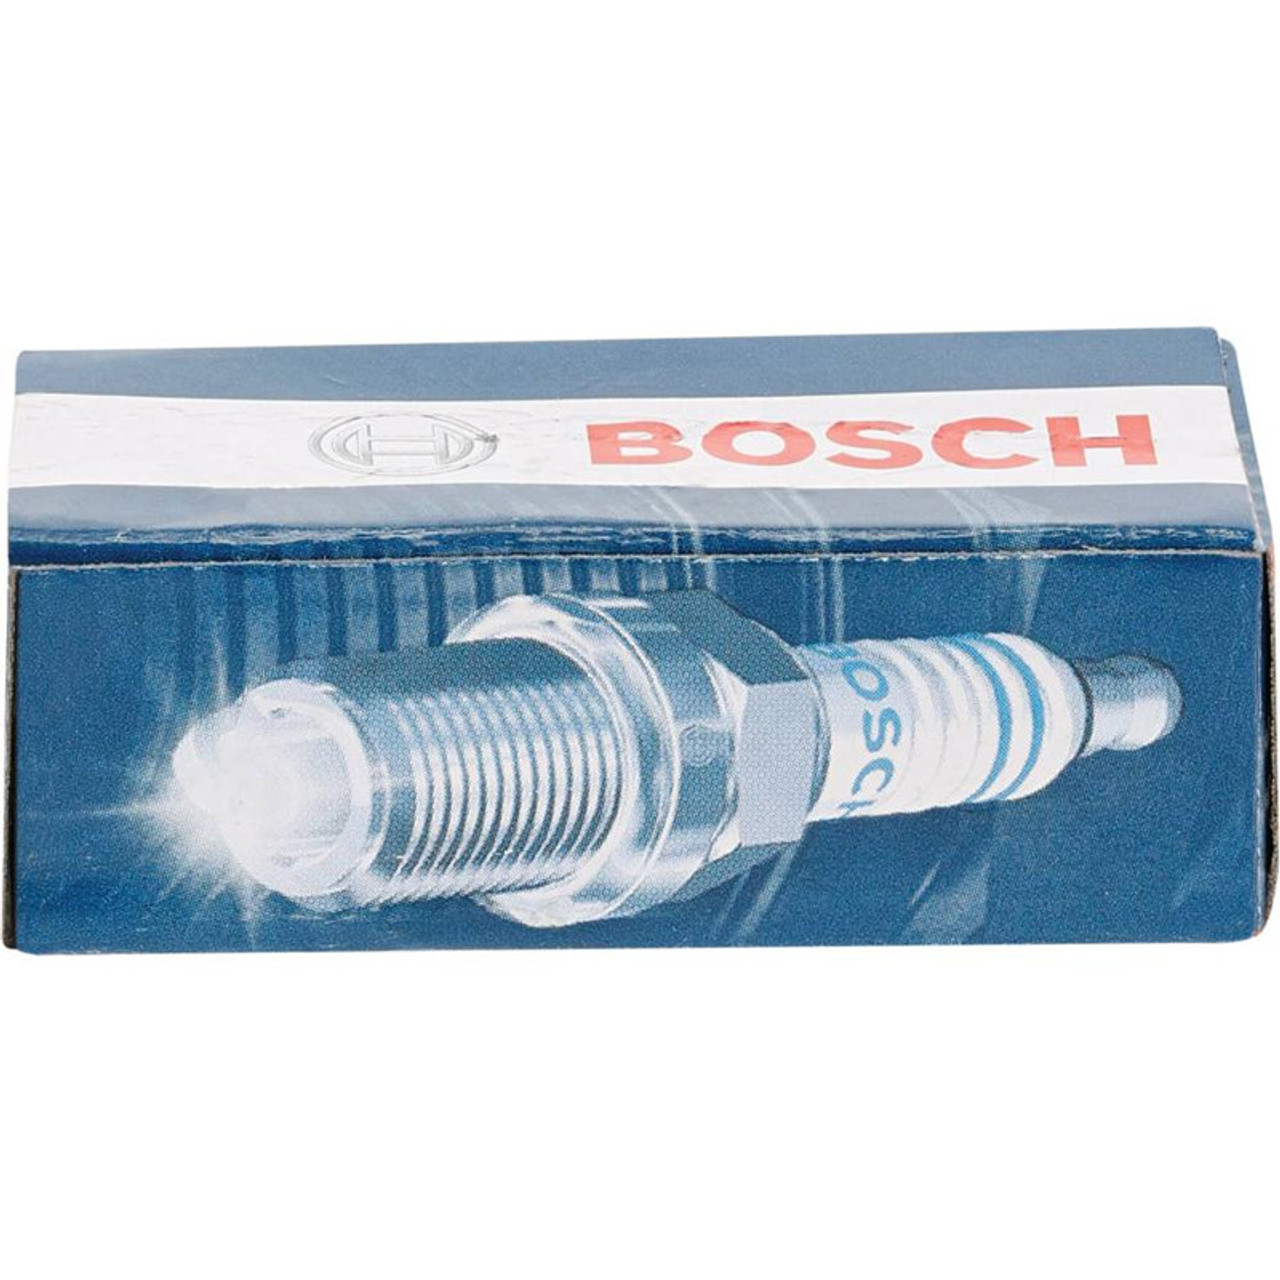 Bosch Spark Plug for Stihl FC90, FC95, FC100, FC110, FS90R, FS100ARX, FS110, FX130, HT100, 00004007009, CMR5H, 0000 400 7009